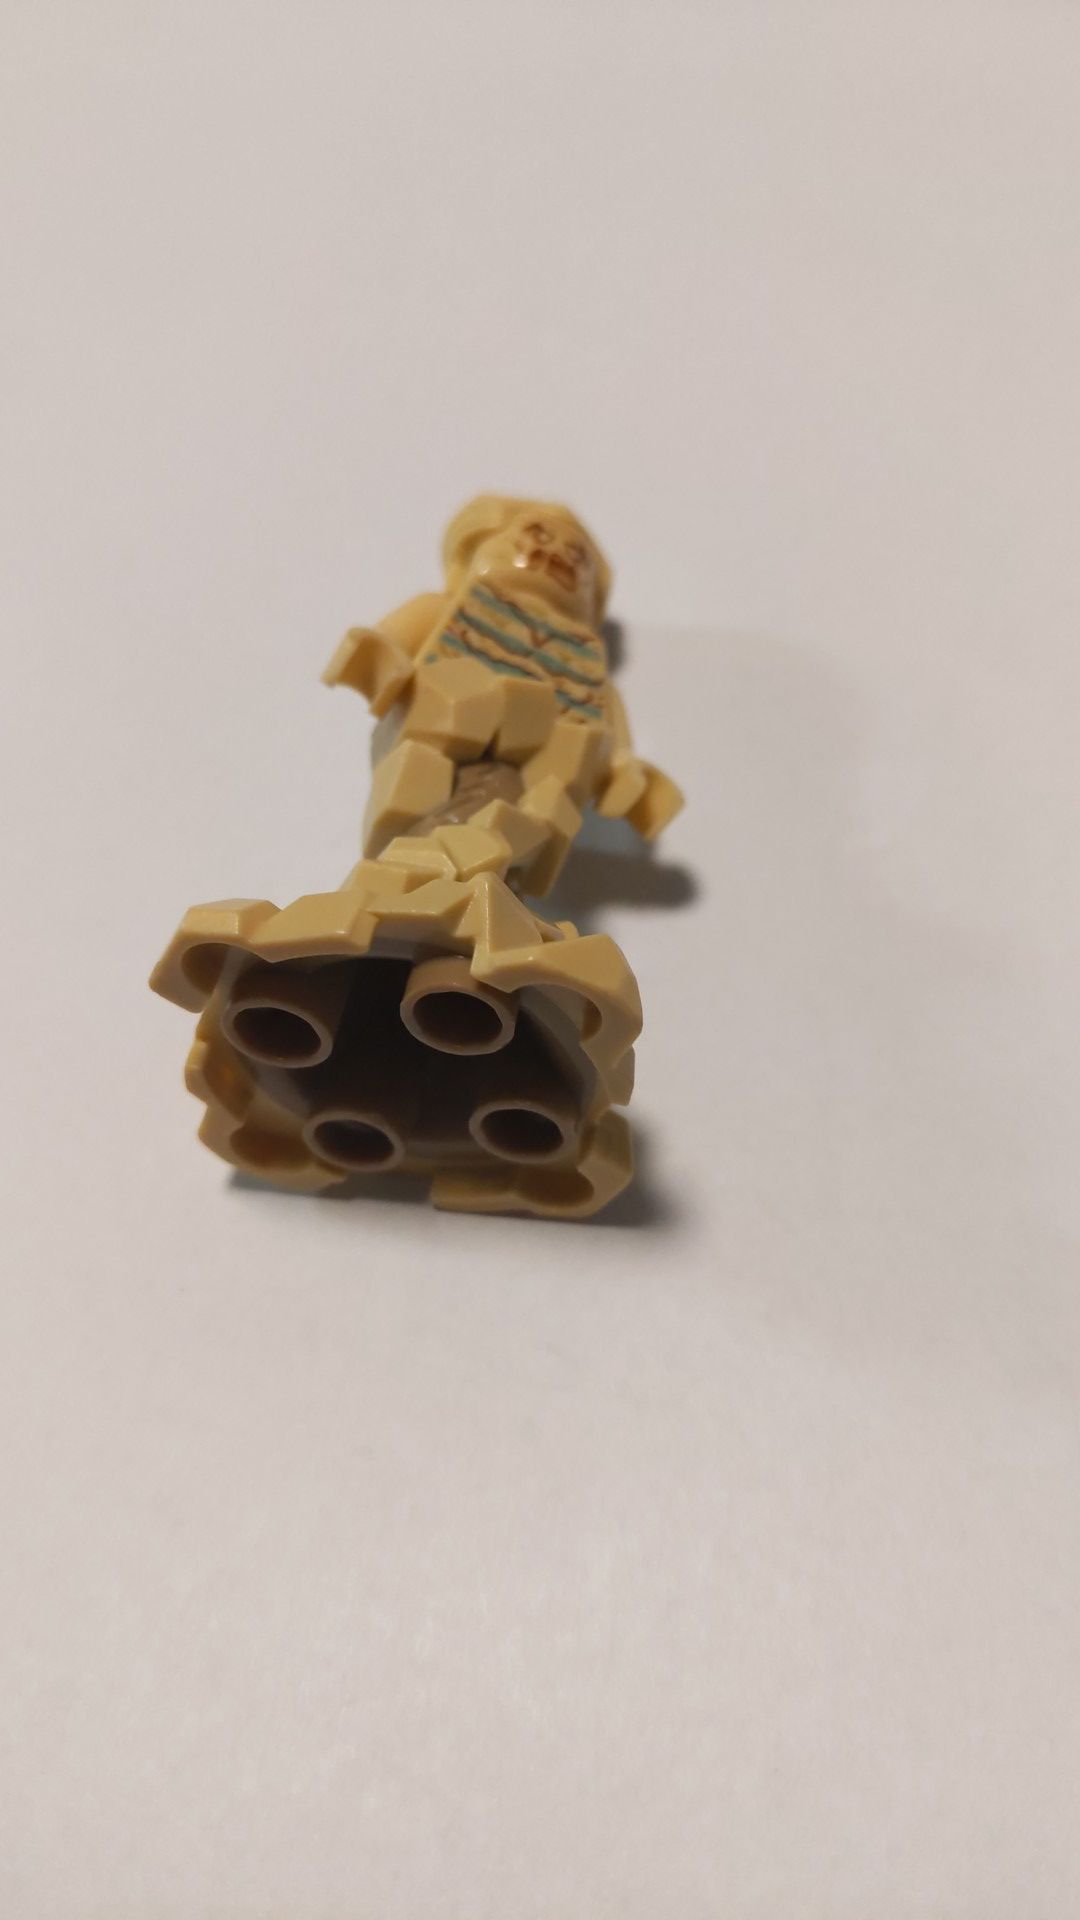 Lego marvel sandman minifigure